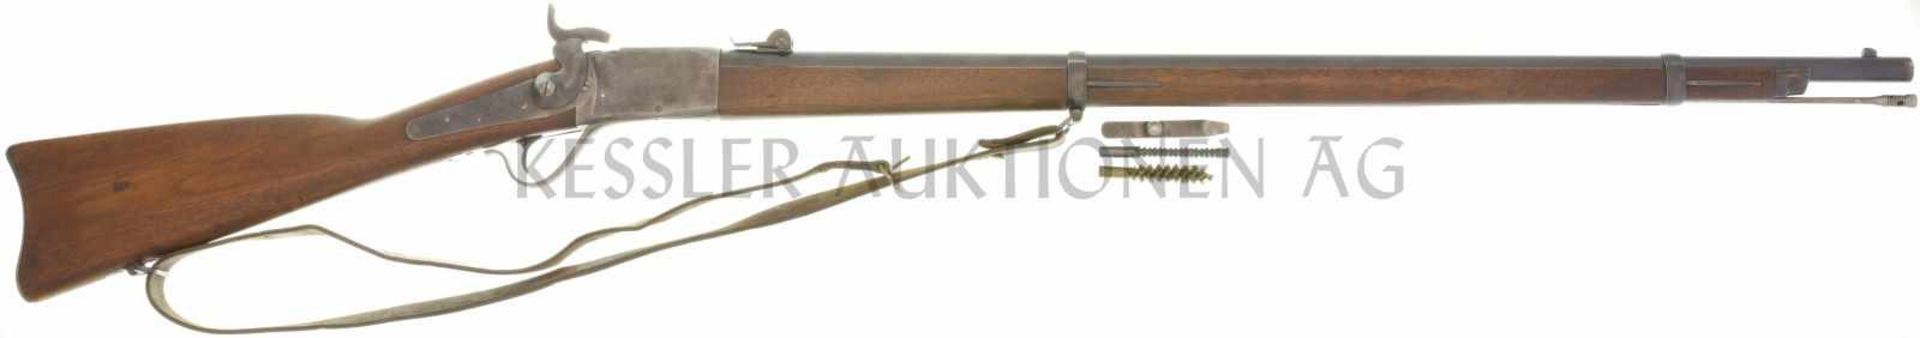 Einzelladerbüchse, Geniegewehr Peabody 1867, Kal. 10.4mmRZ LL 830mm, TL 1310mm, Blockverschluss,